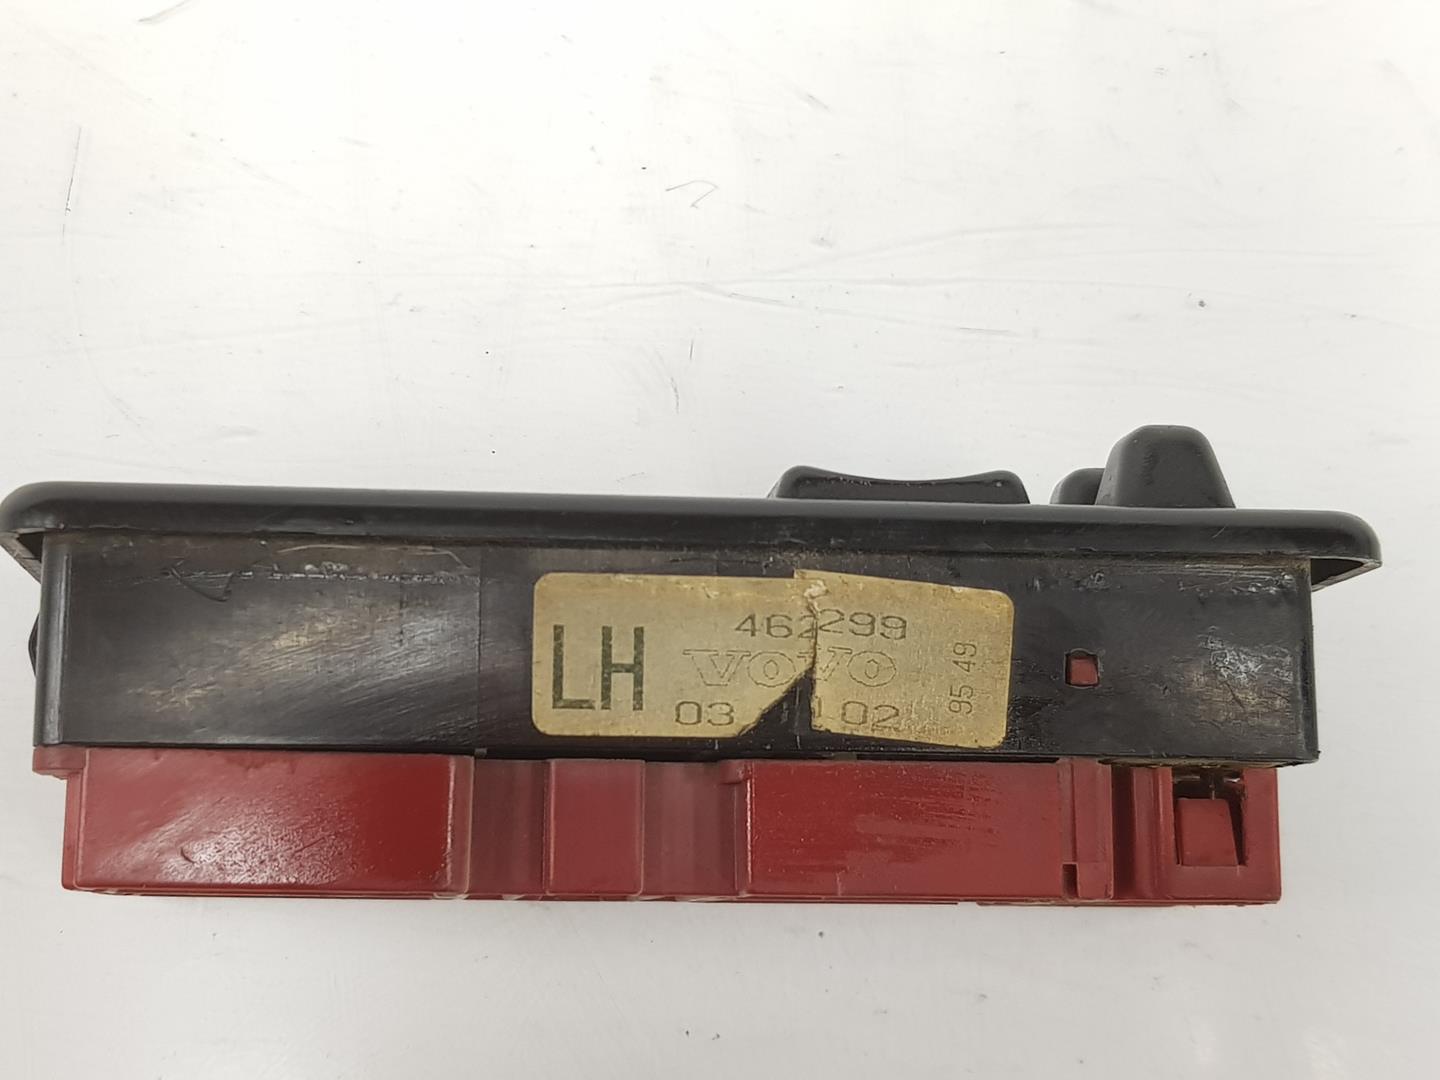 VOLVO 460 1 generation (1988-1996) Vänster främre dörrfönsterbrytare 462299, 462299 19928486